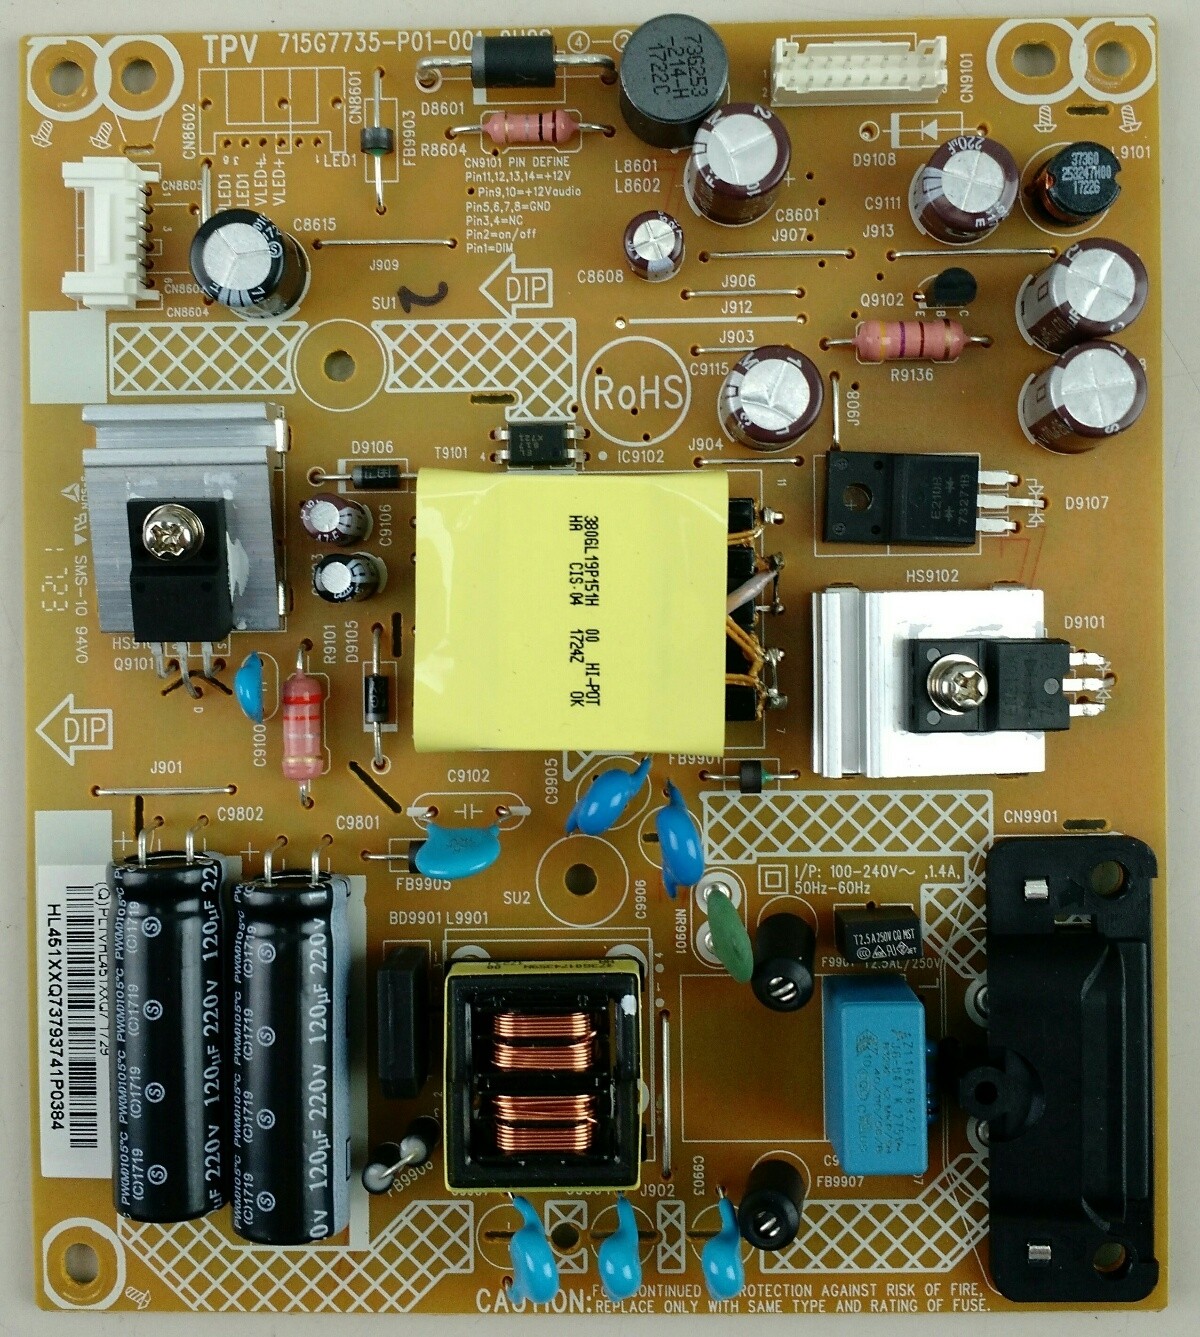 Vizio 715G7735-P01-001-OH2S Power Board for D32f-E1 TV